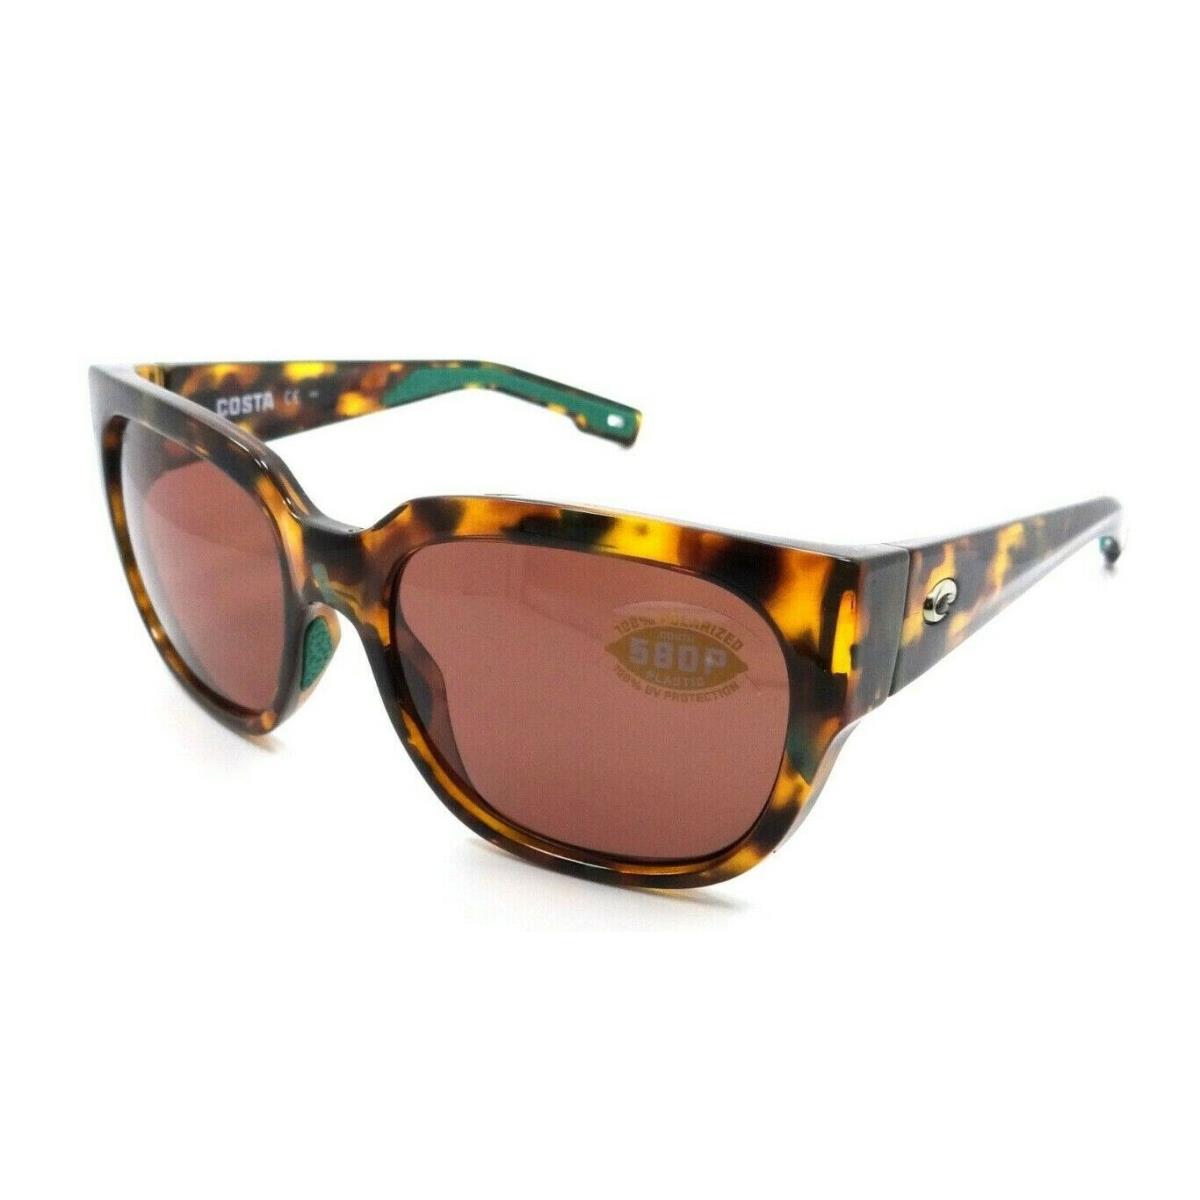 Costa Del Mar Sunglasses Waterwoman 250 Shiny Palm Tortoise / Copper 580P - Frame: